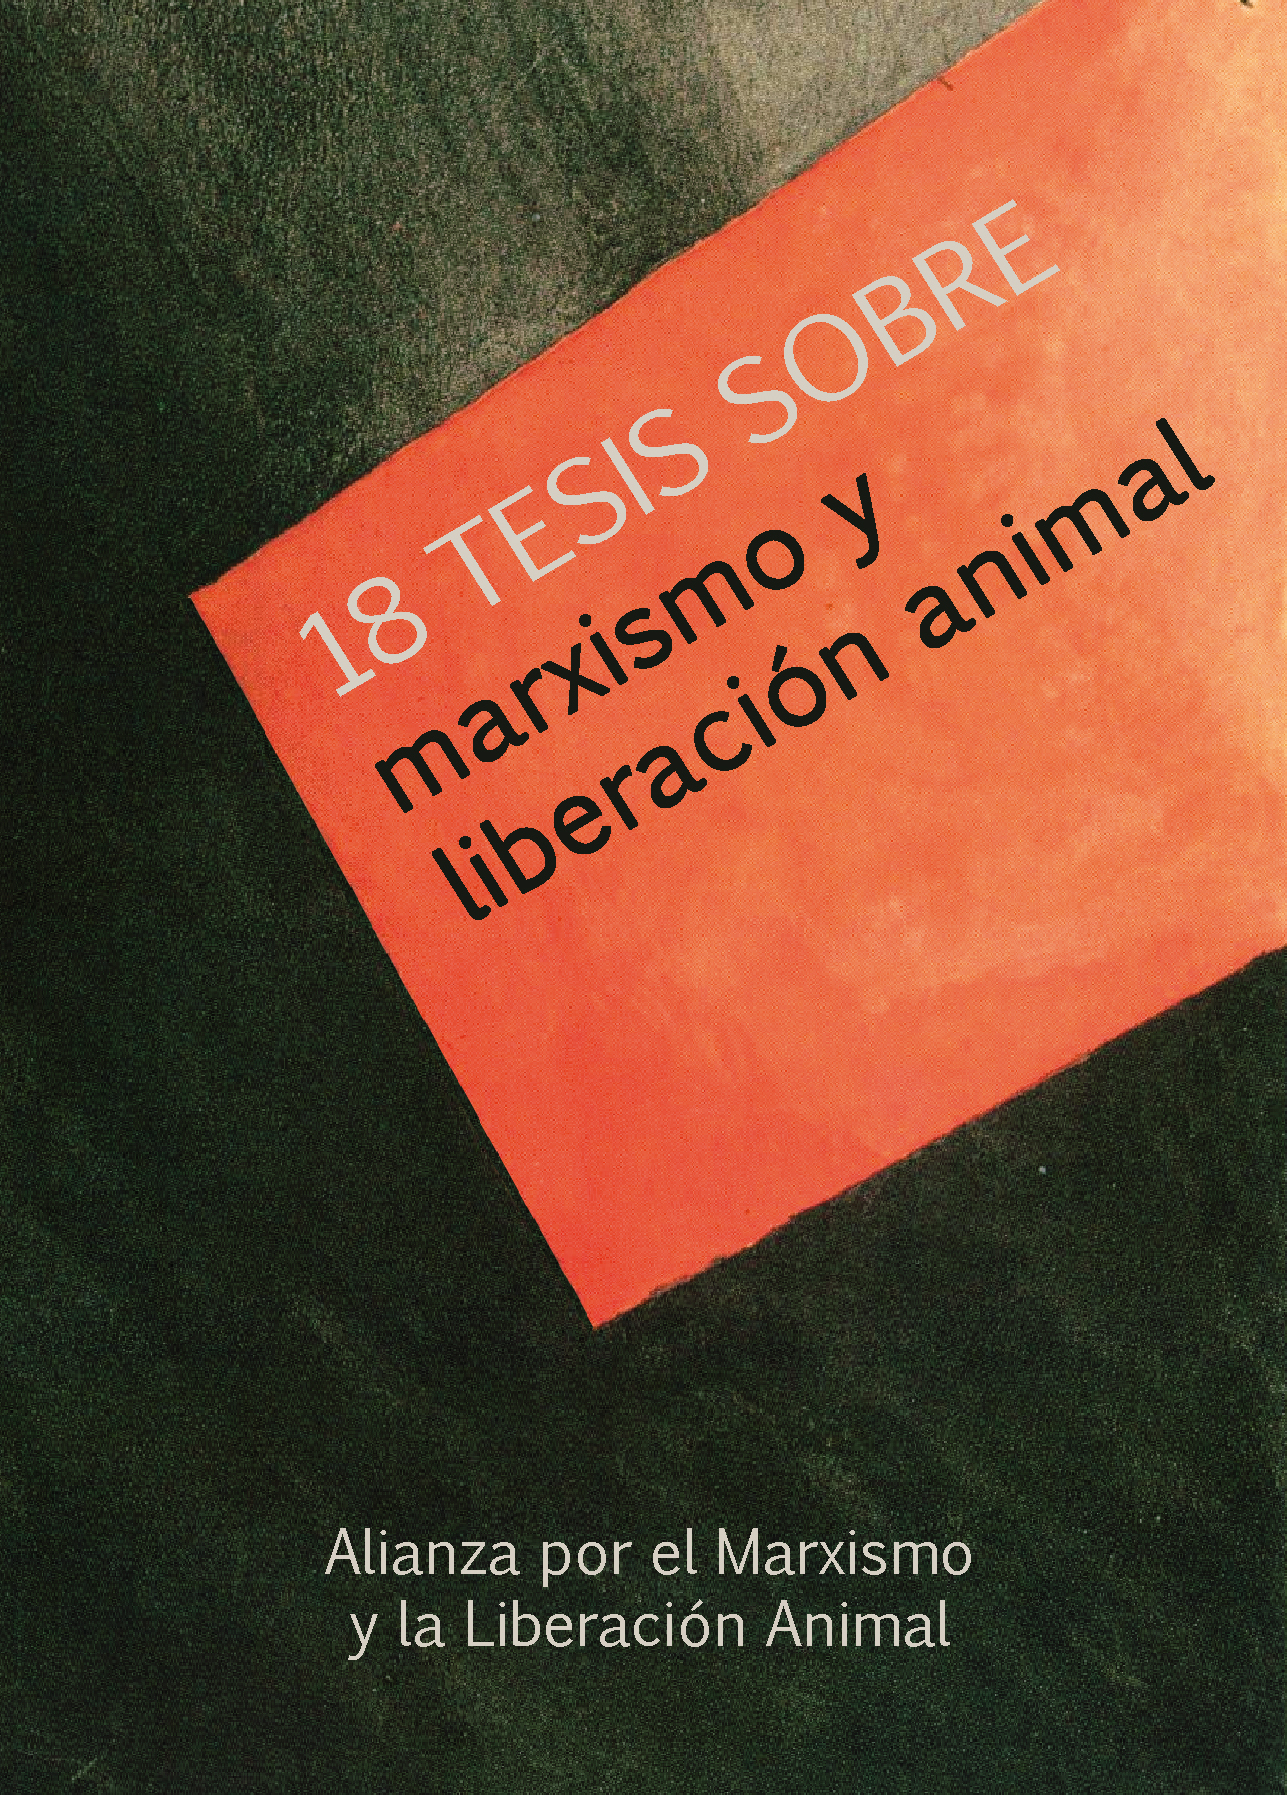 18 tesis sobre Marxismo y liberación animal